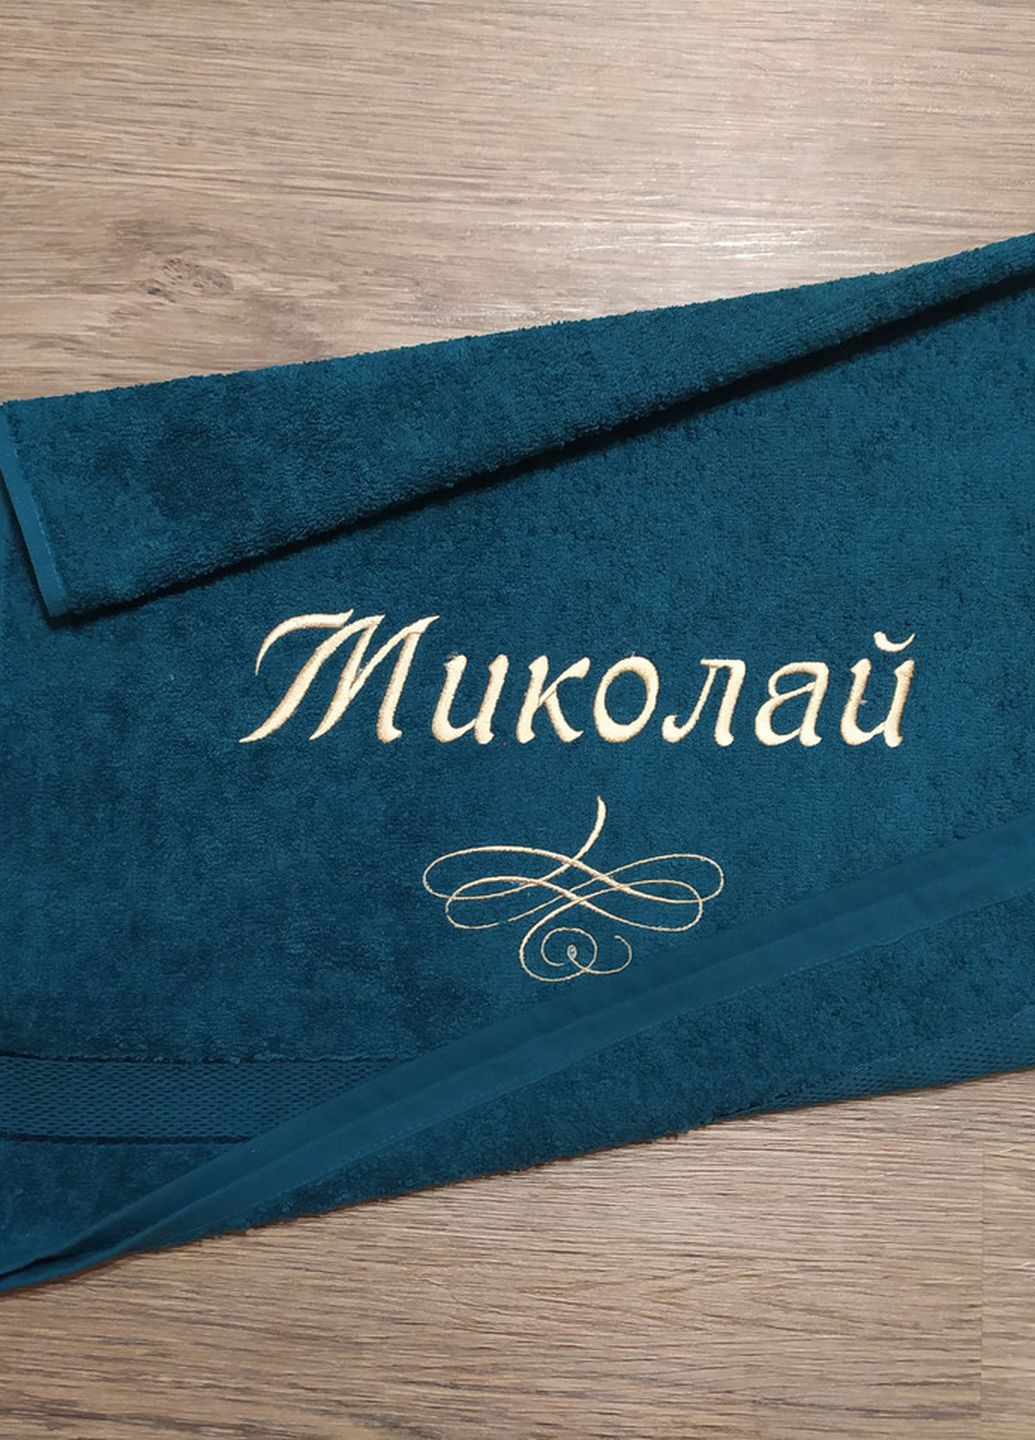 No Brand полотенце с именной вышивкой махровое лицевое 50*90 зеленый николай 04256 однотонный зеленый производство - Украина